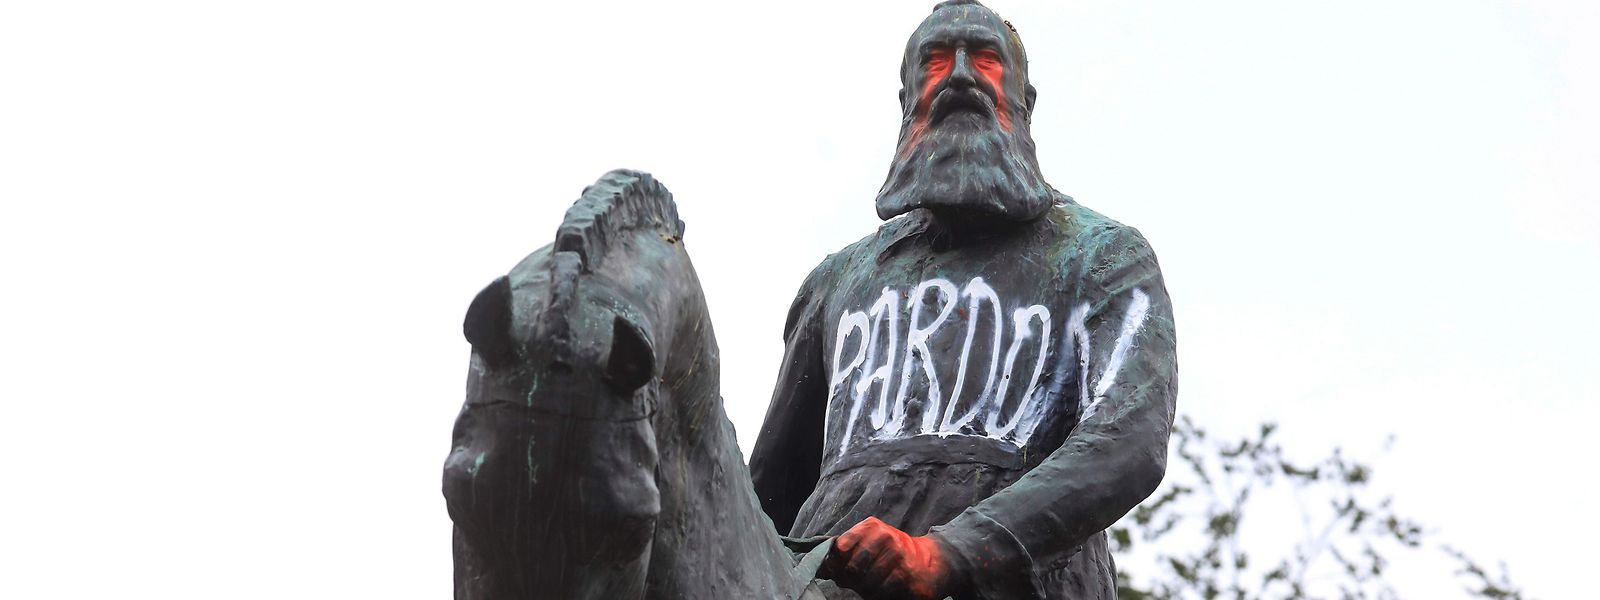 Plusieurs statues de Léopold II avaient été déboulonnées et vandalisées en 2020.